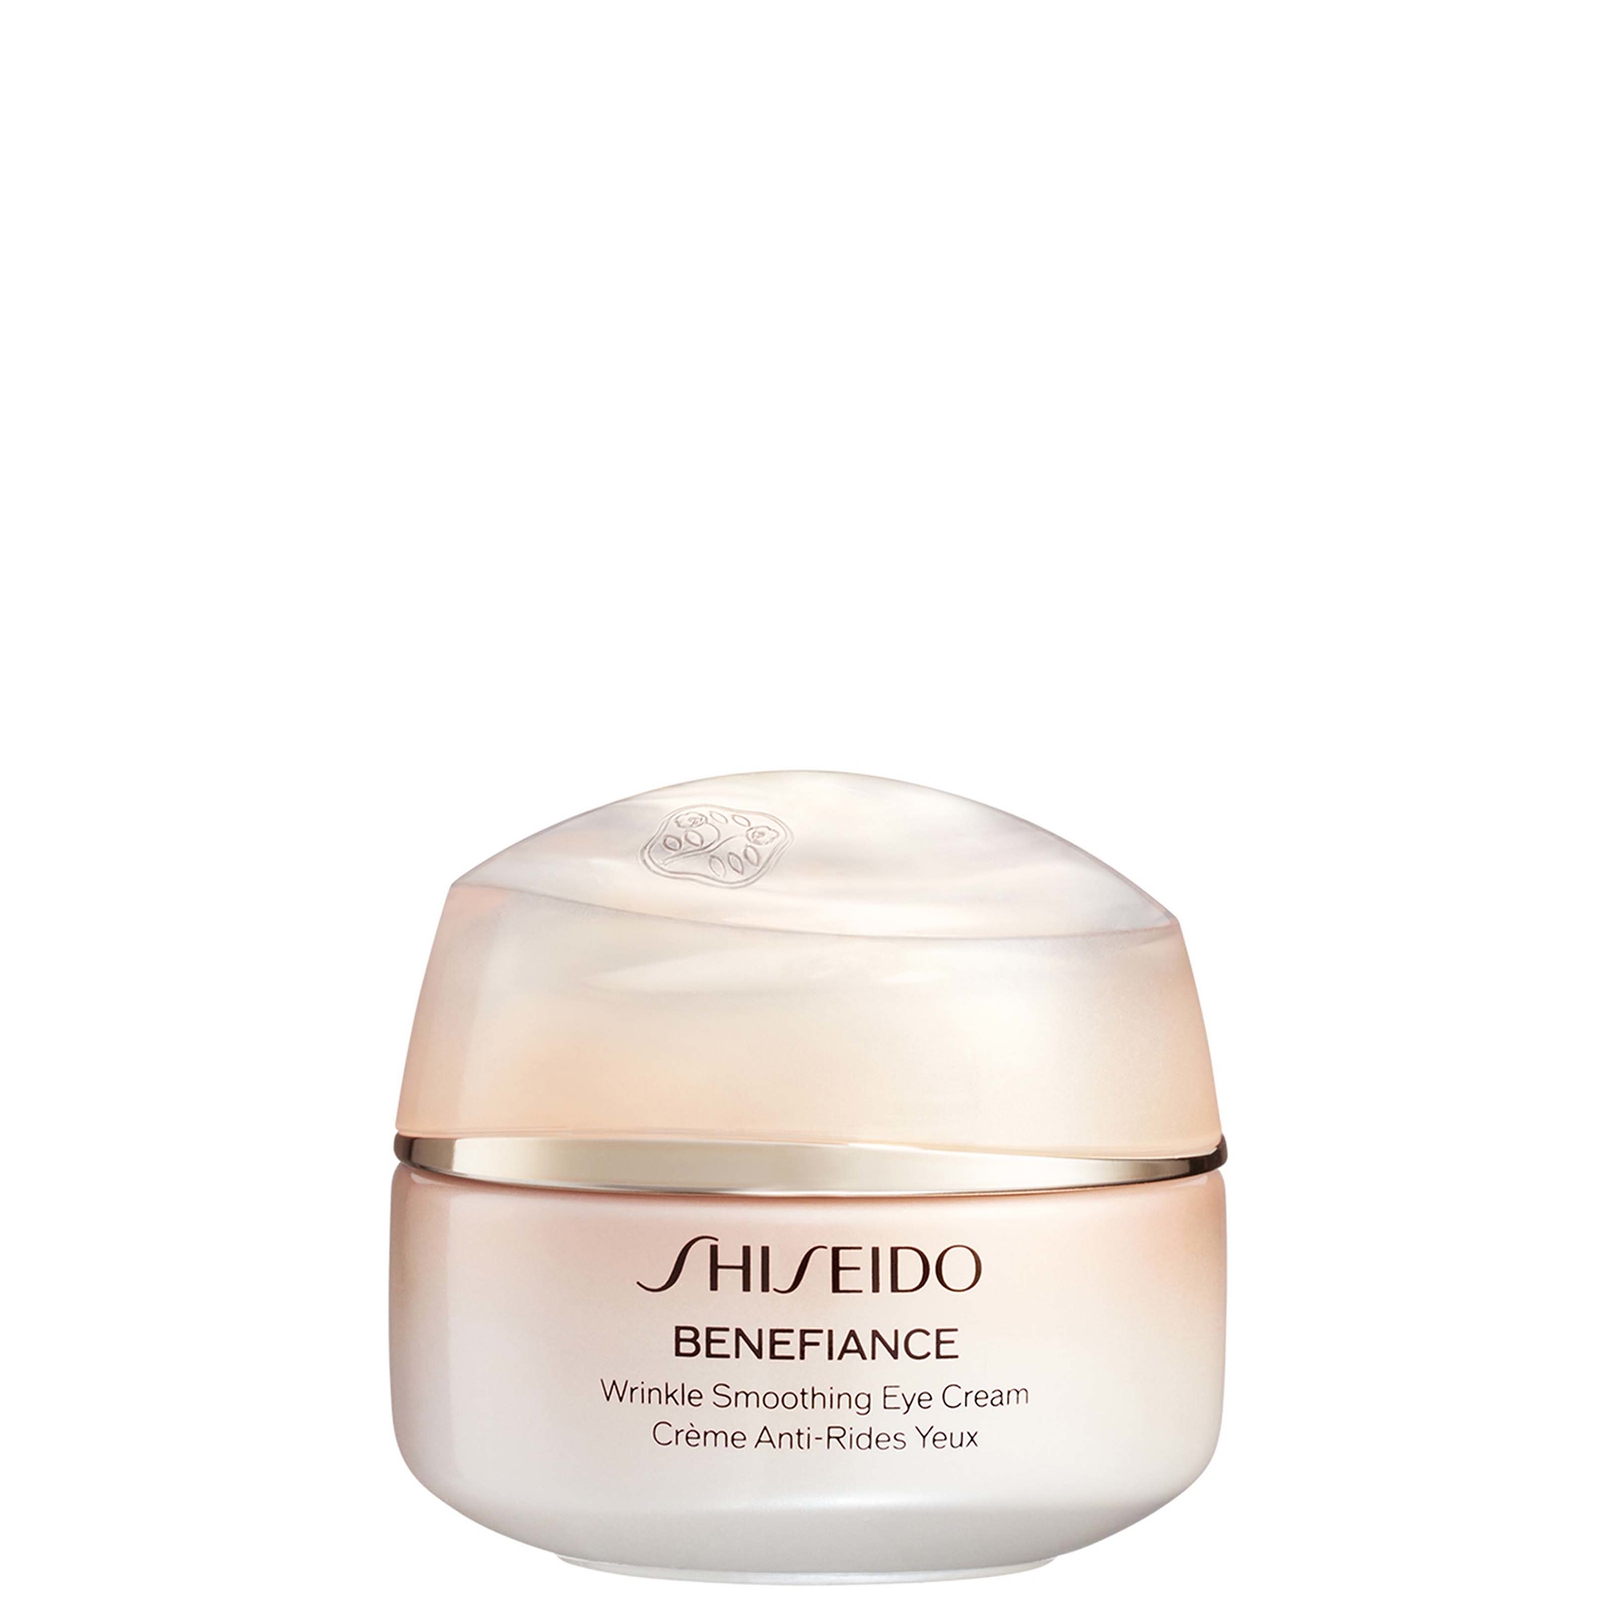 Zdjęcia - Kremy i toniki Shiseido Benefiance Wrinkle Smoothing Eye Cream 15ml 10120857401 